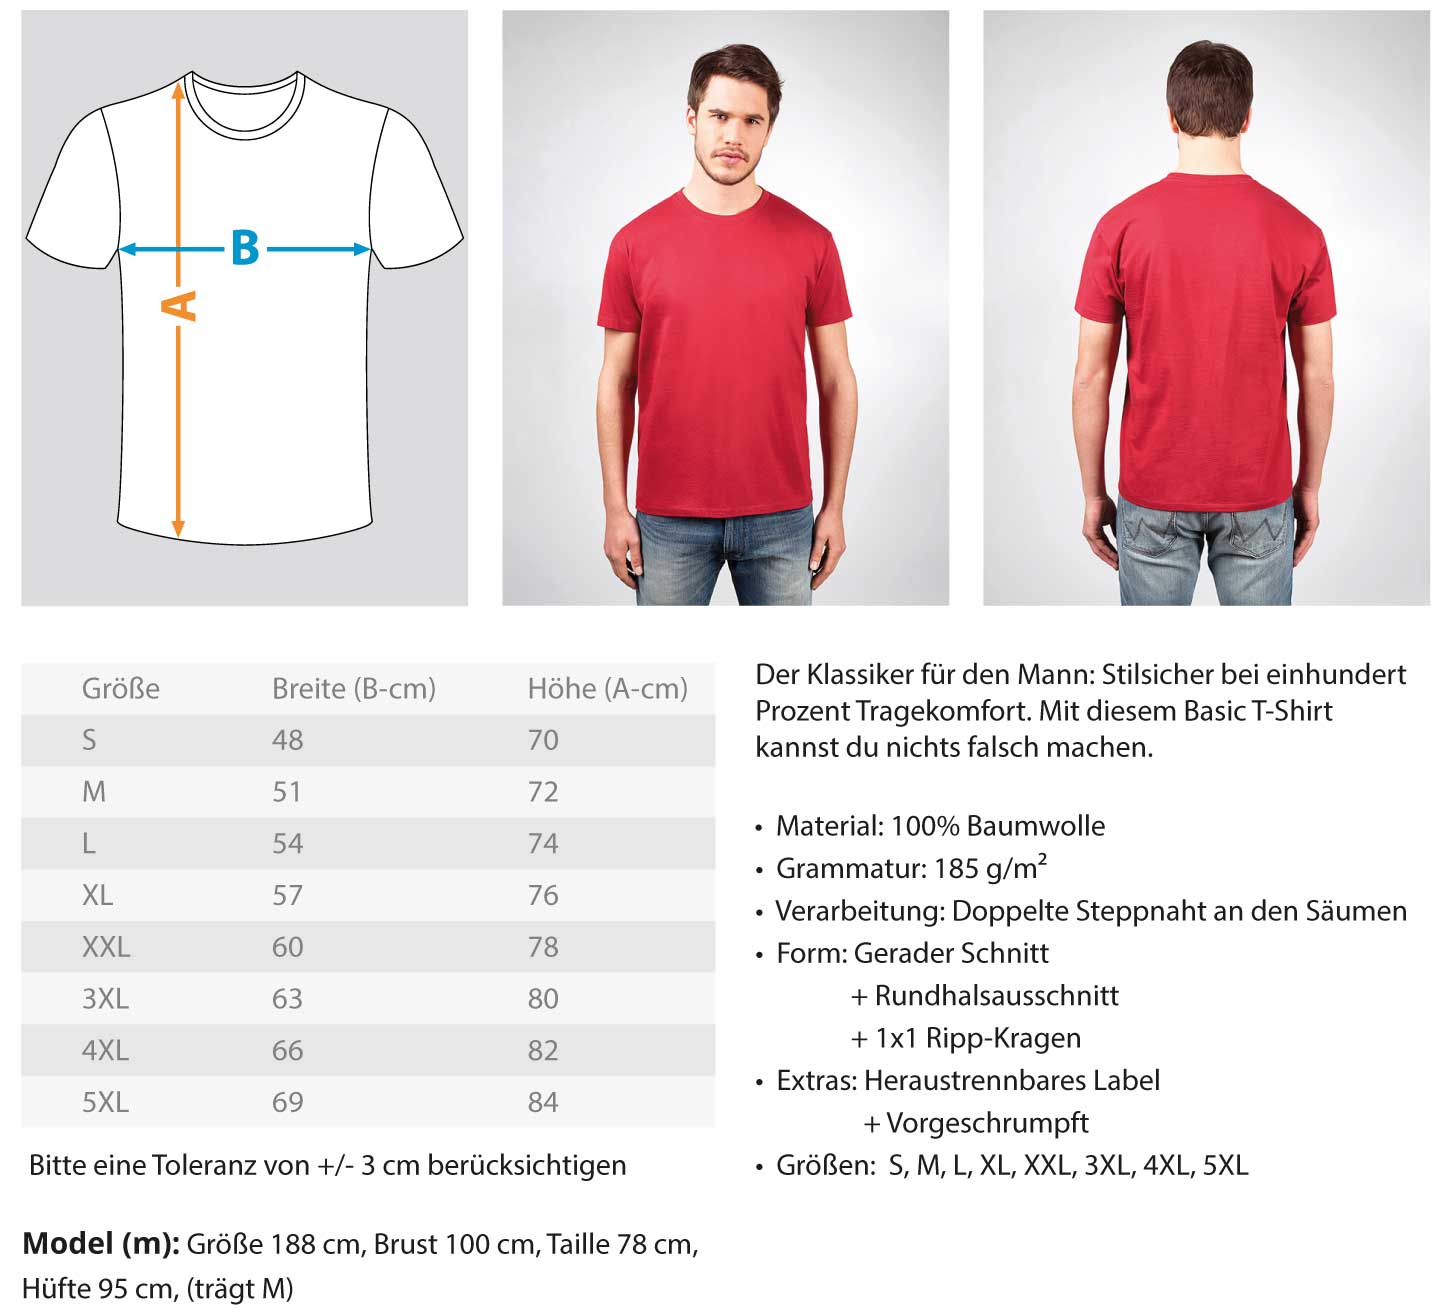 Scaffolder  - Herren Shirt €24.95 Gerüstbauer - Shop >>